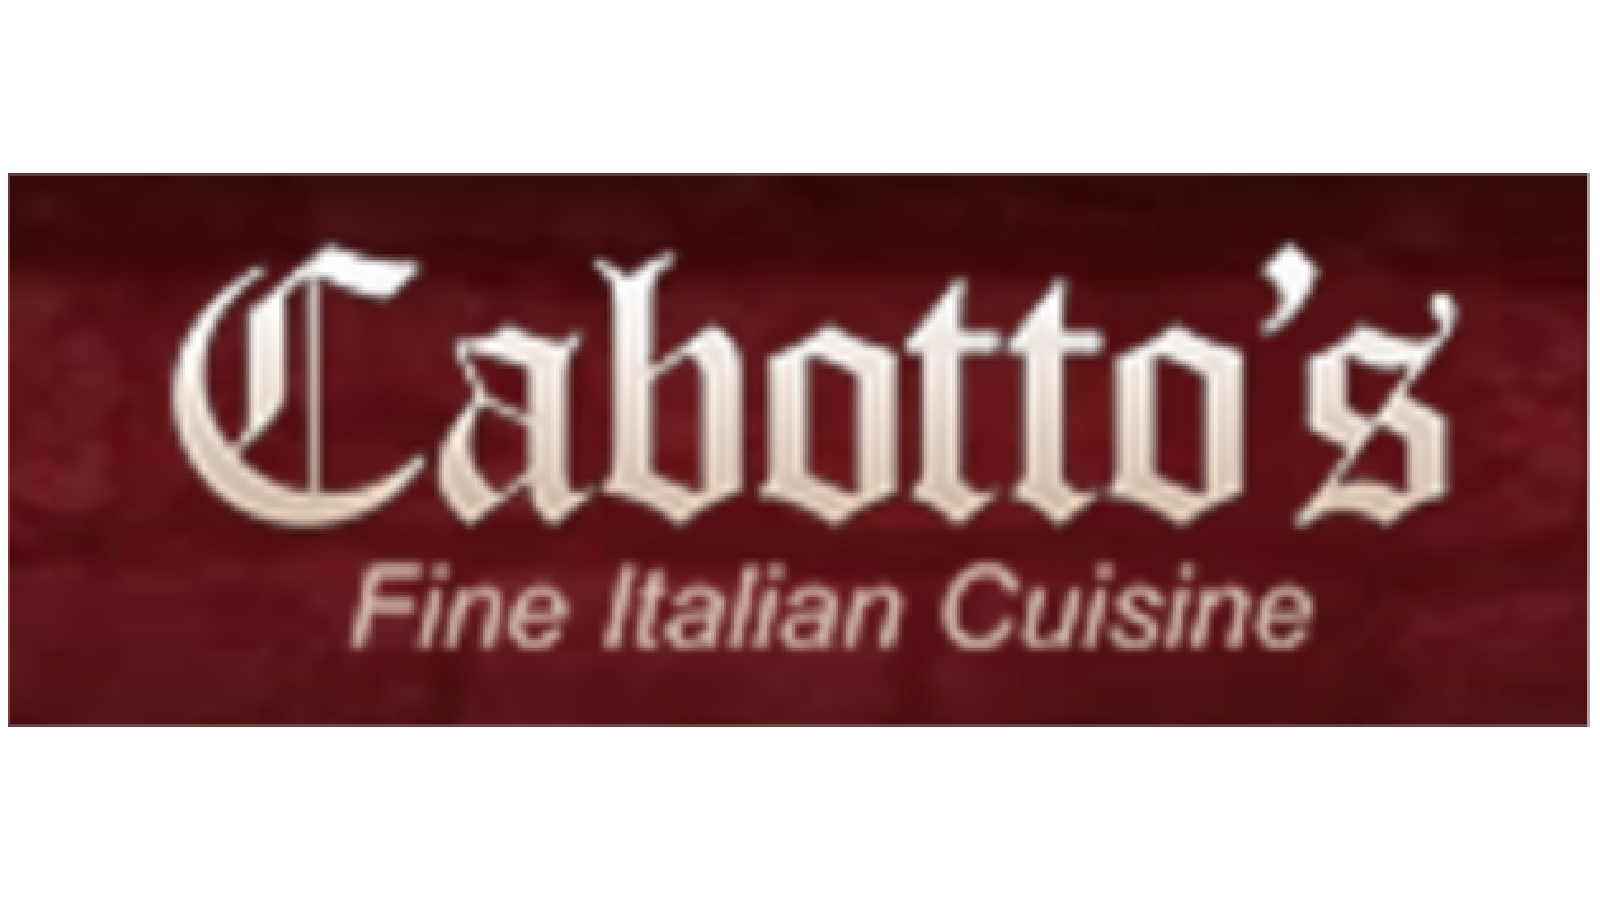 Cabottos Restaurant Delivery in Ottawa - Delivery Menu - DoorDash